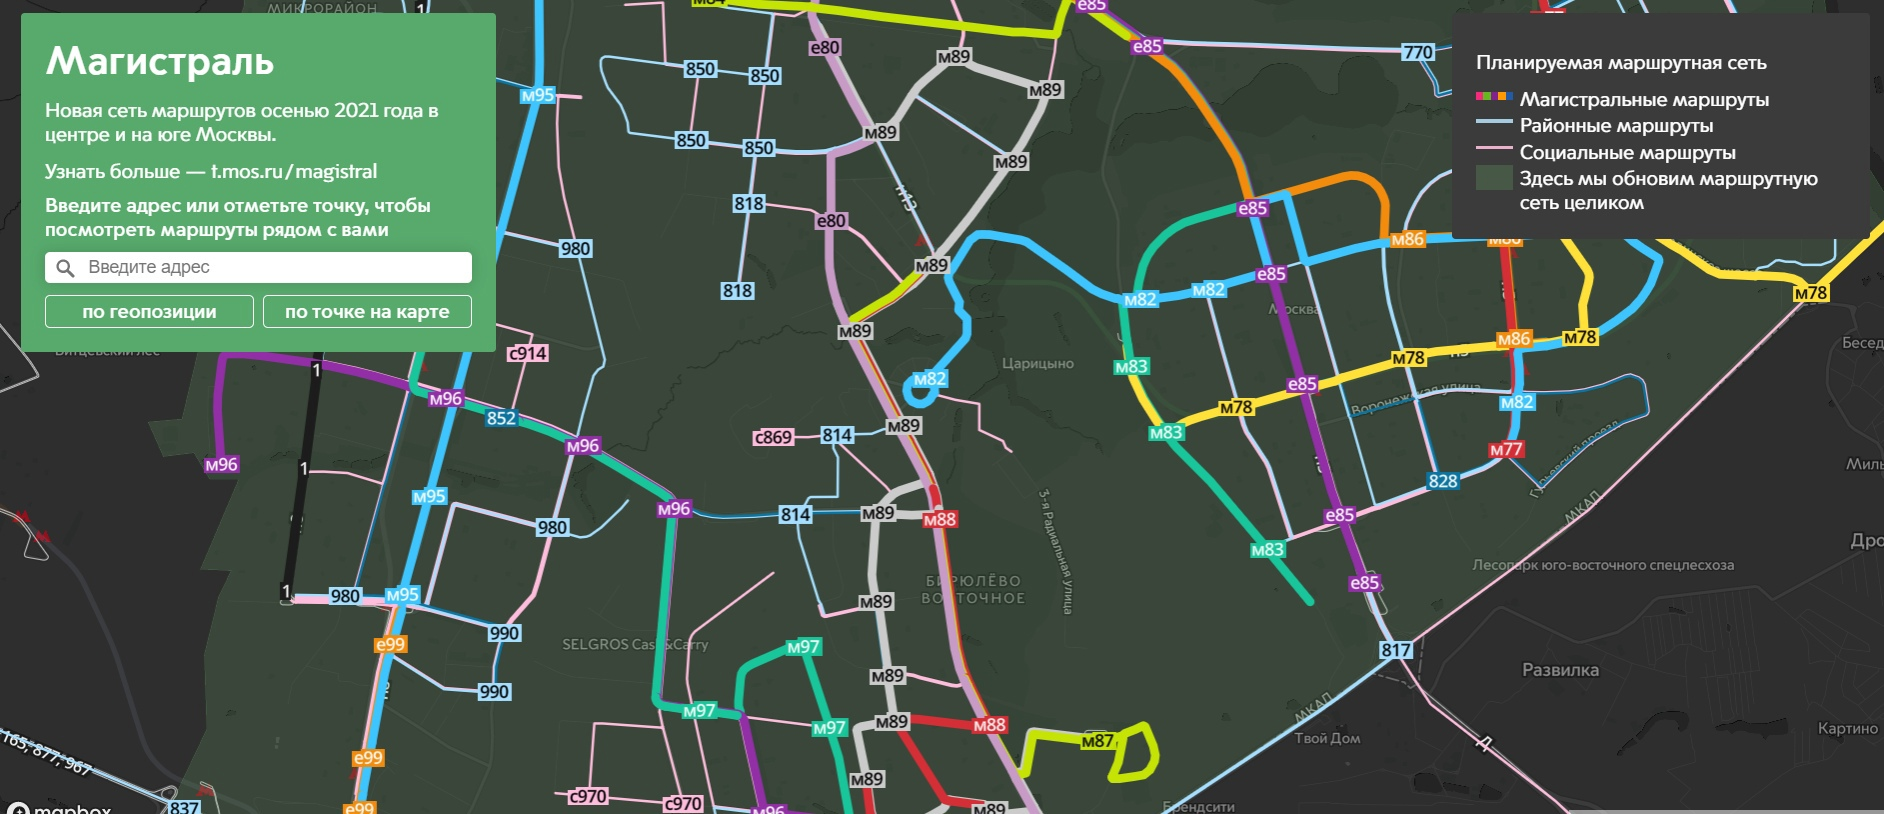 Карта маршруток 5. Магистраль 2022 маршрутная сеть. Новая маршрутная сеть магистраль. Схема автобусов магистраль в Москве. Маршрутная сеть магистраль Москва.